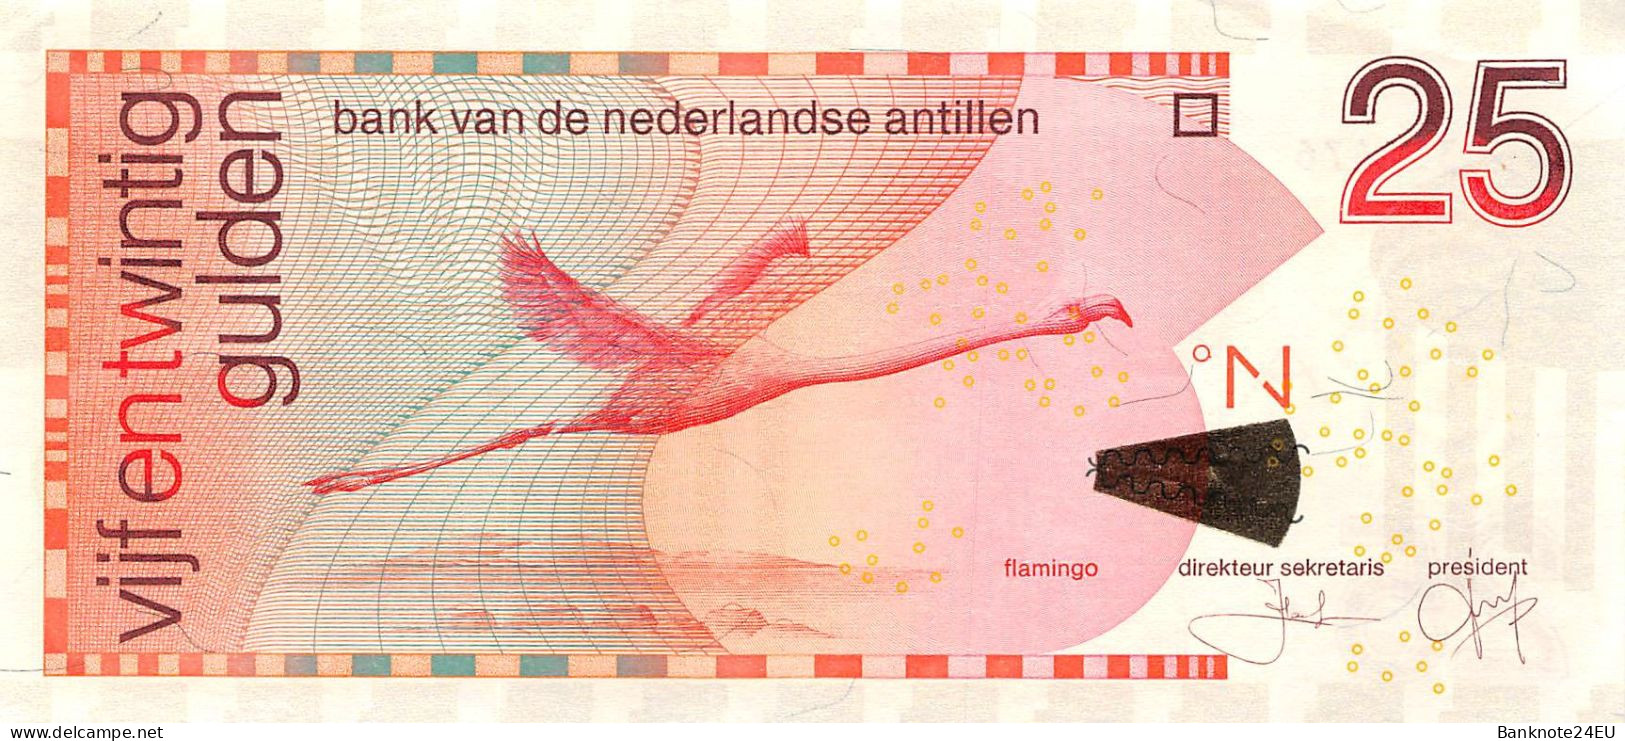 Netherlands Antilles 25 Gulden 2011 Xf Pn 29f Serienumber 4150351476 - Antilles Néerlandaises (...-1986)